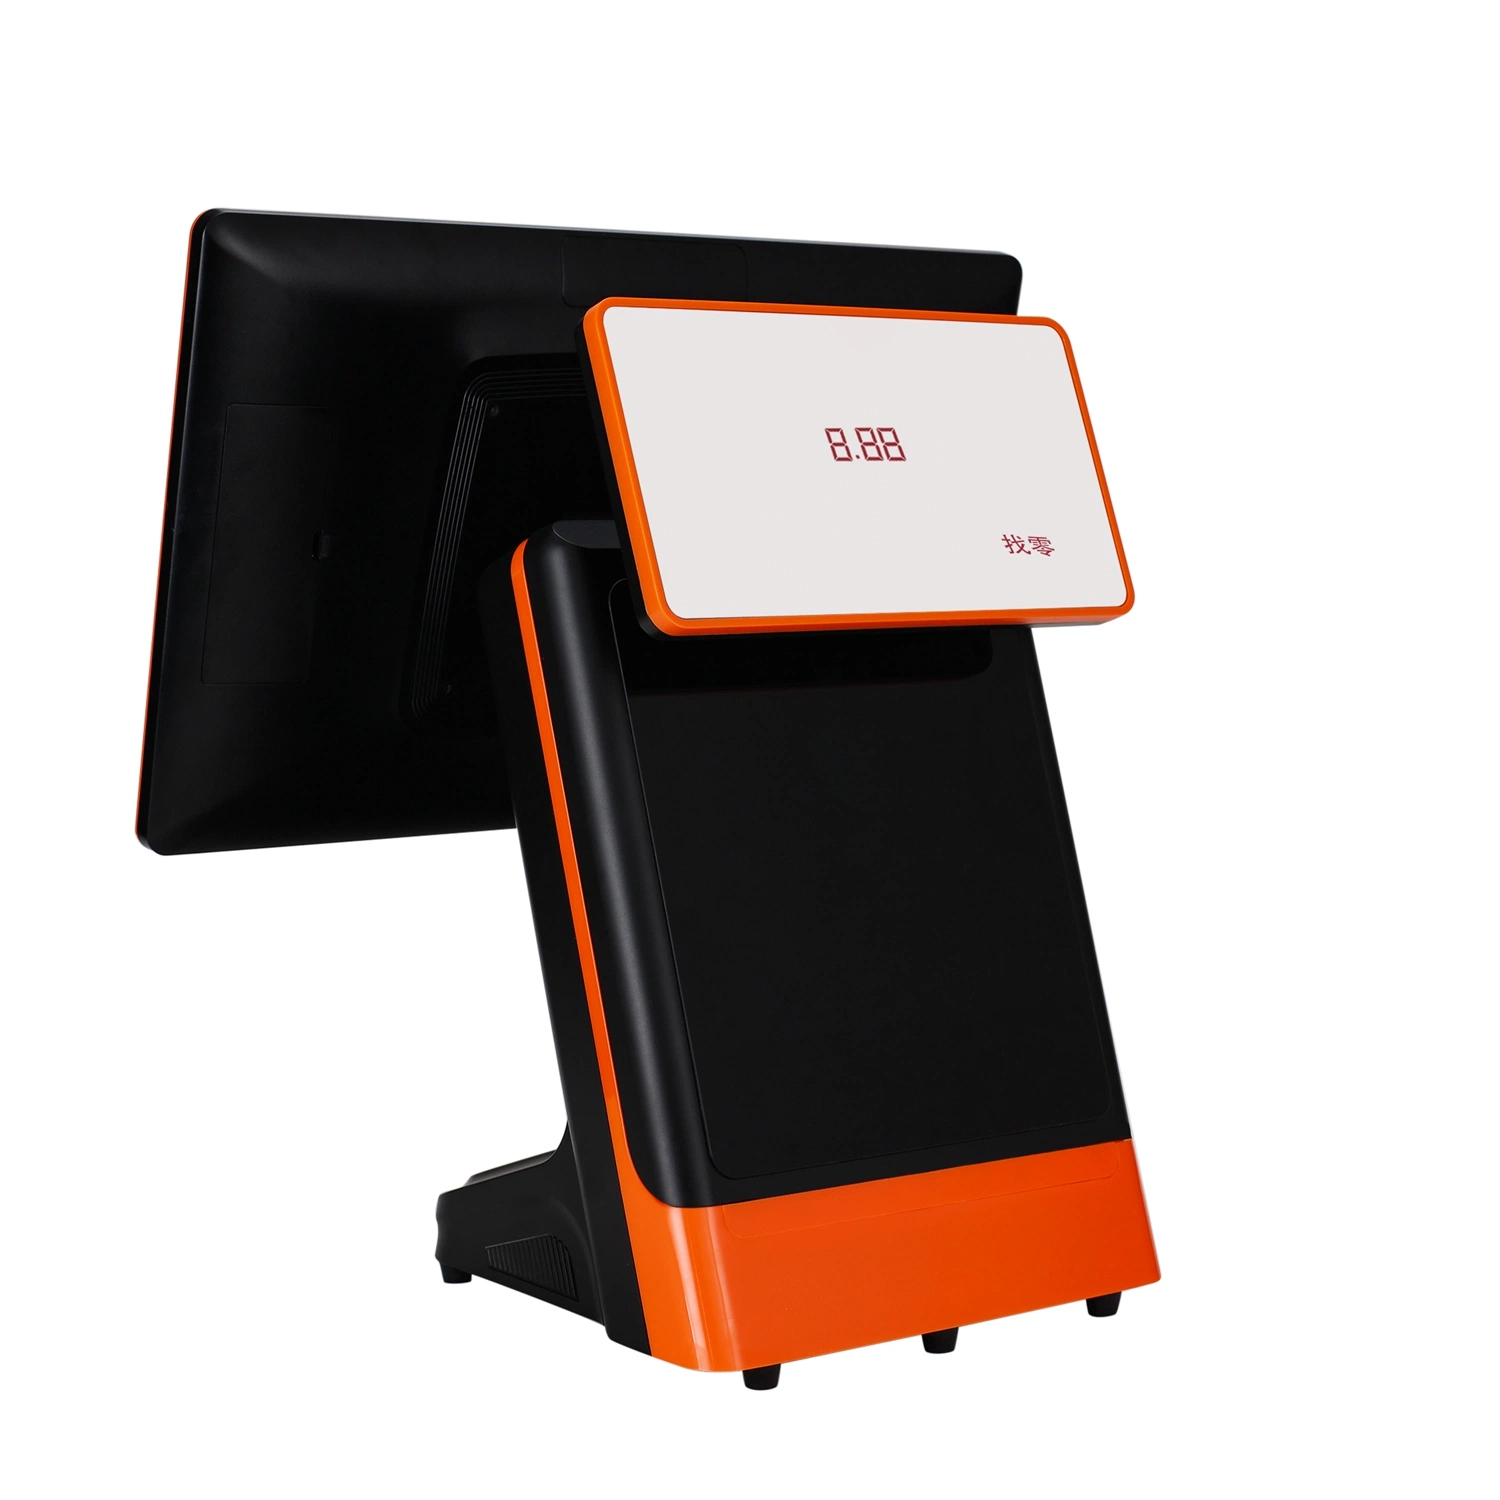 Facile caisse enregistreuse électronique avec le scanner pour l'épicerie/boutique Kiosque de table